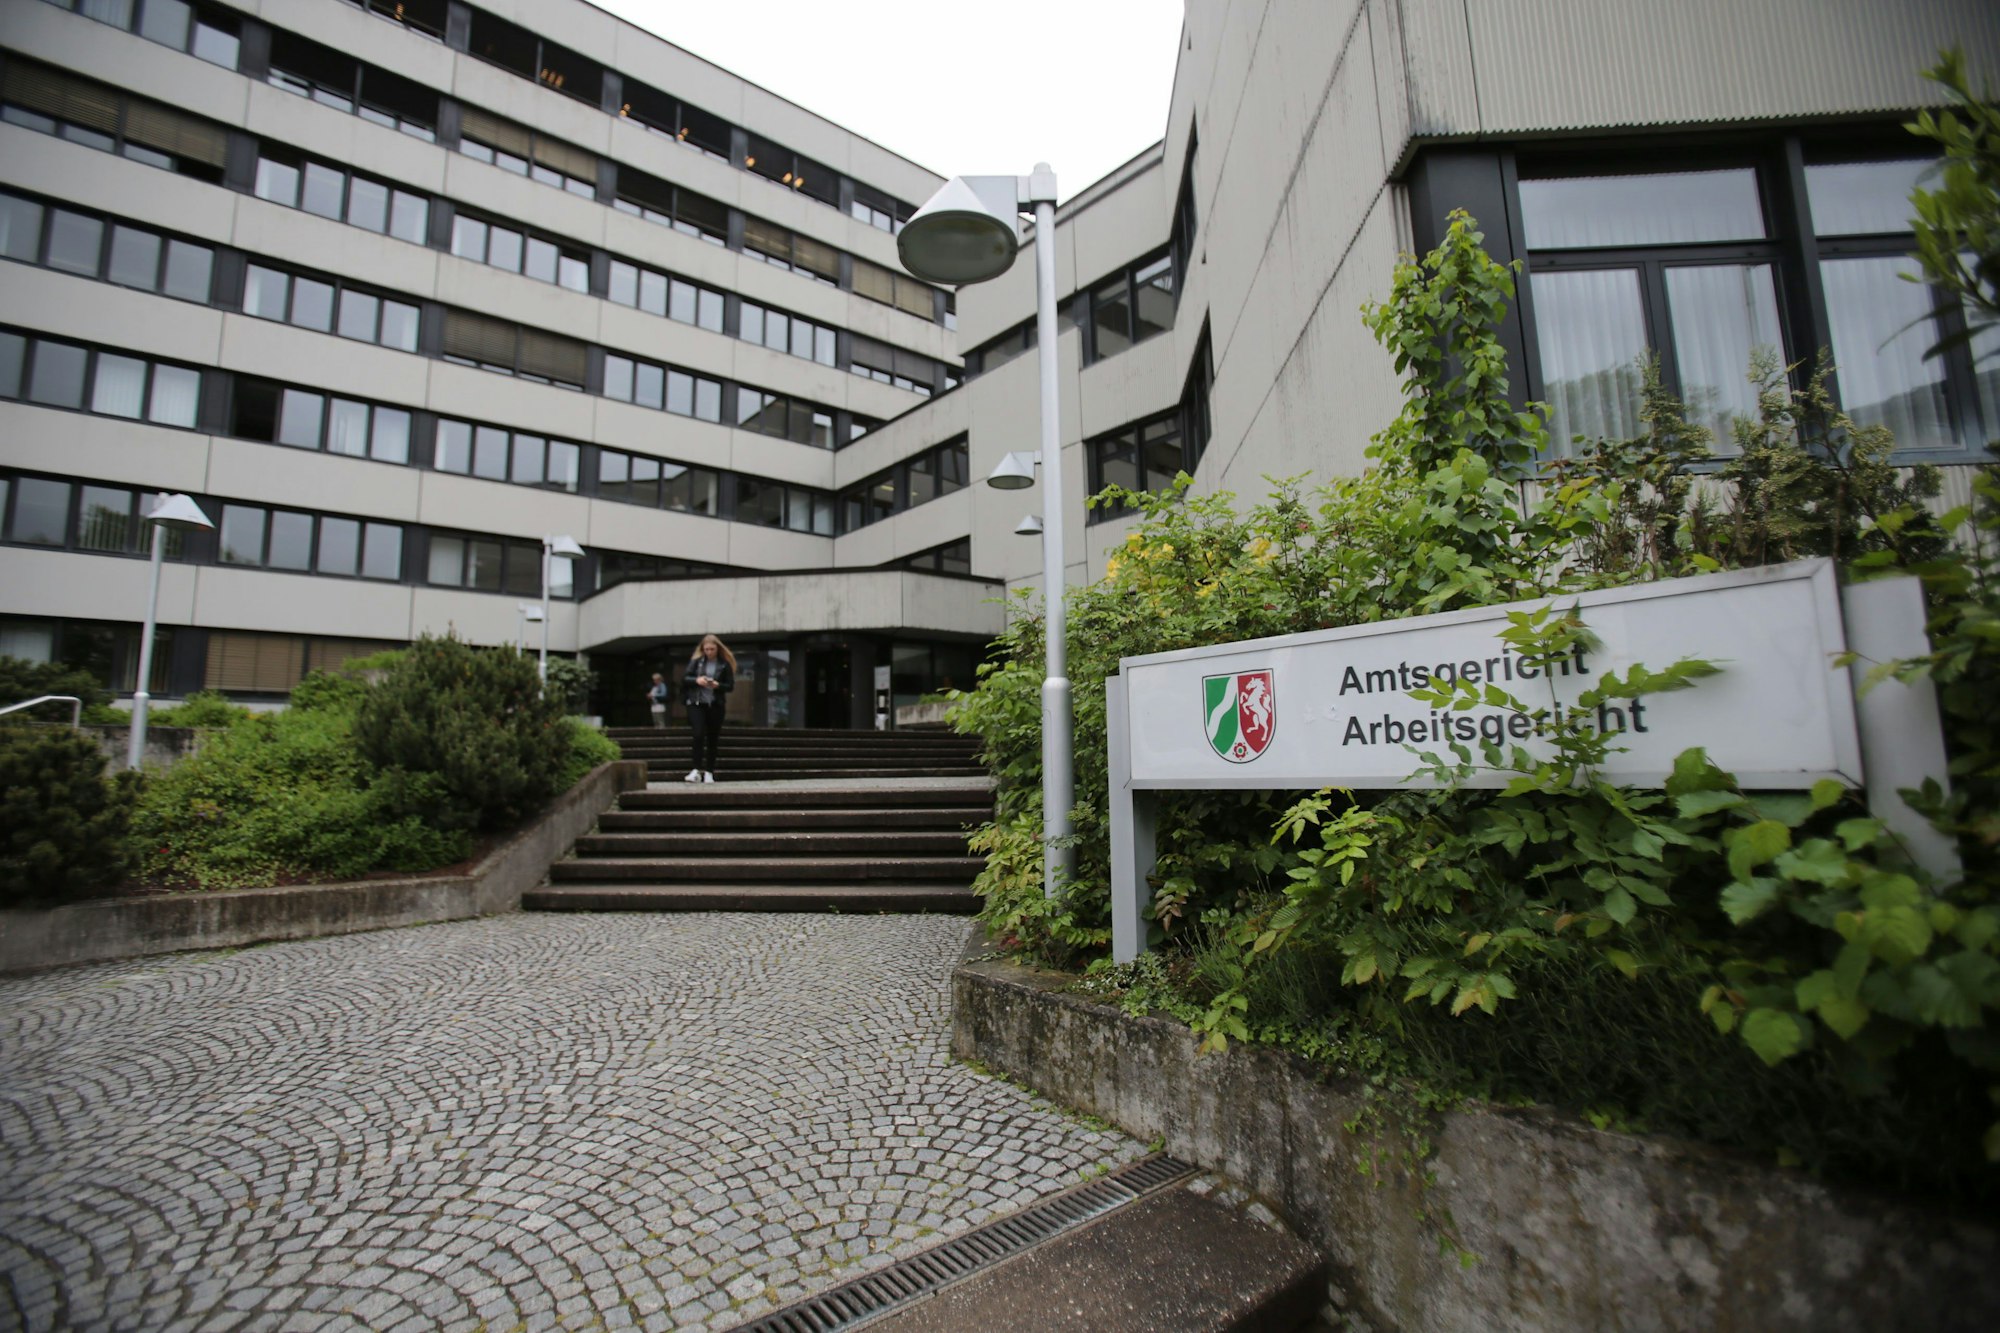 Das Amtsgericht und Arbeitsgericht, fotografiert am 17. Mai 2016 in Siegburg (Nordrhein-Westfalen).